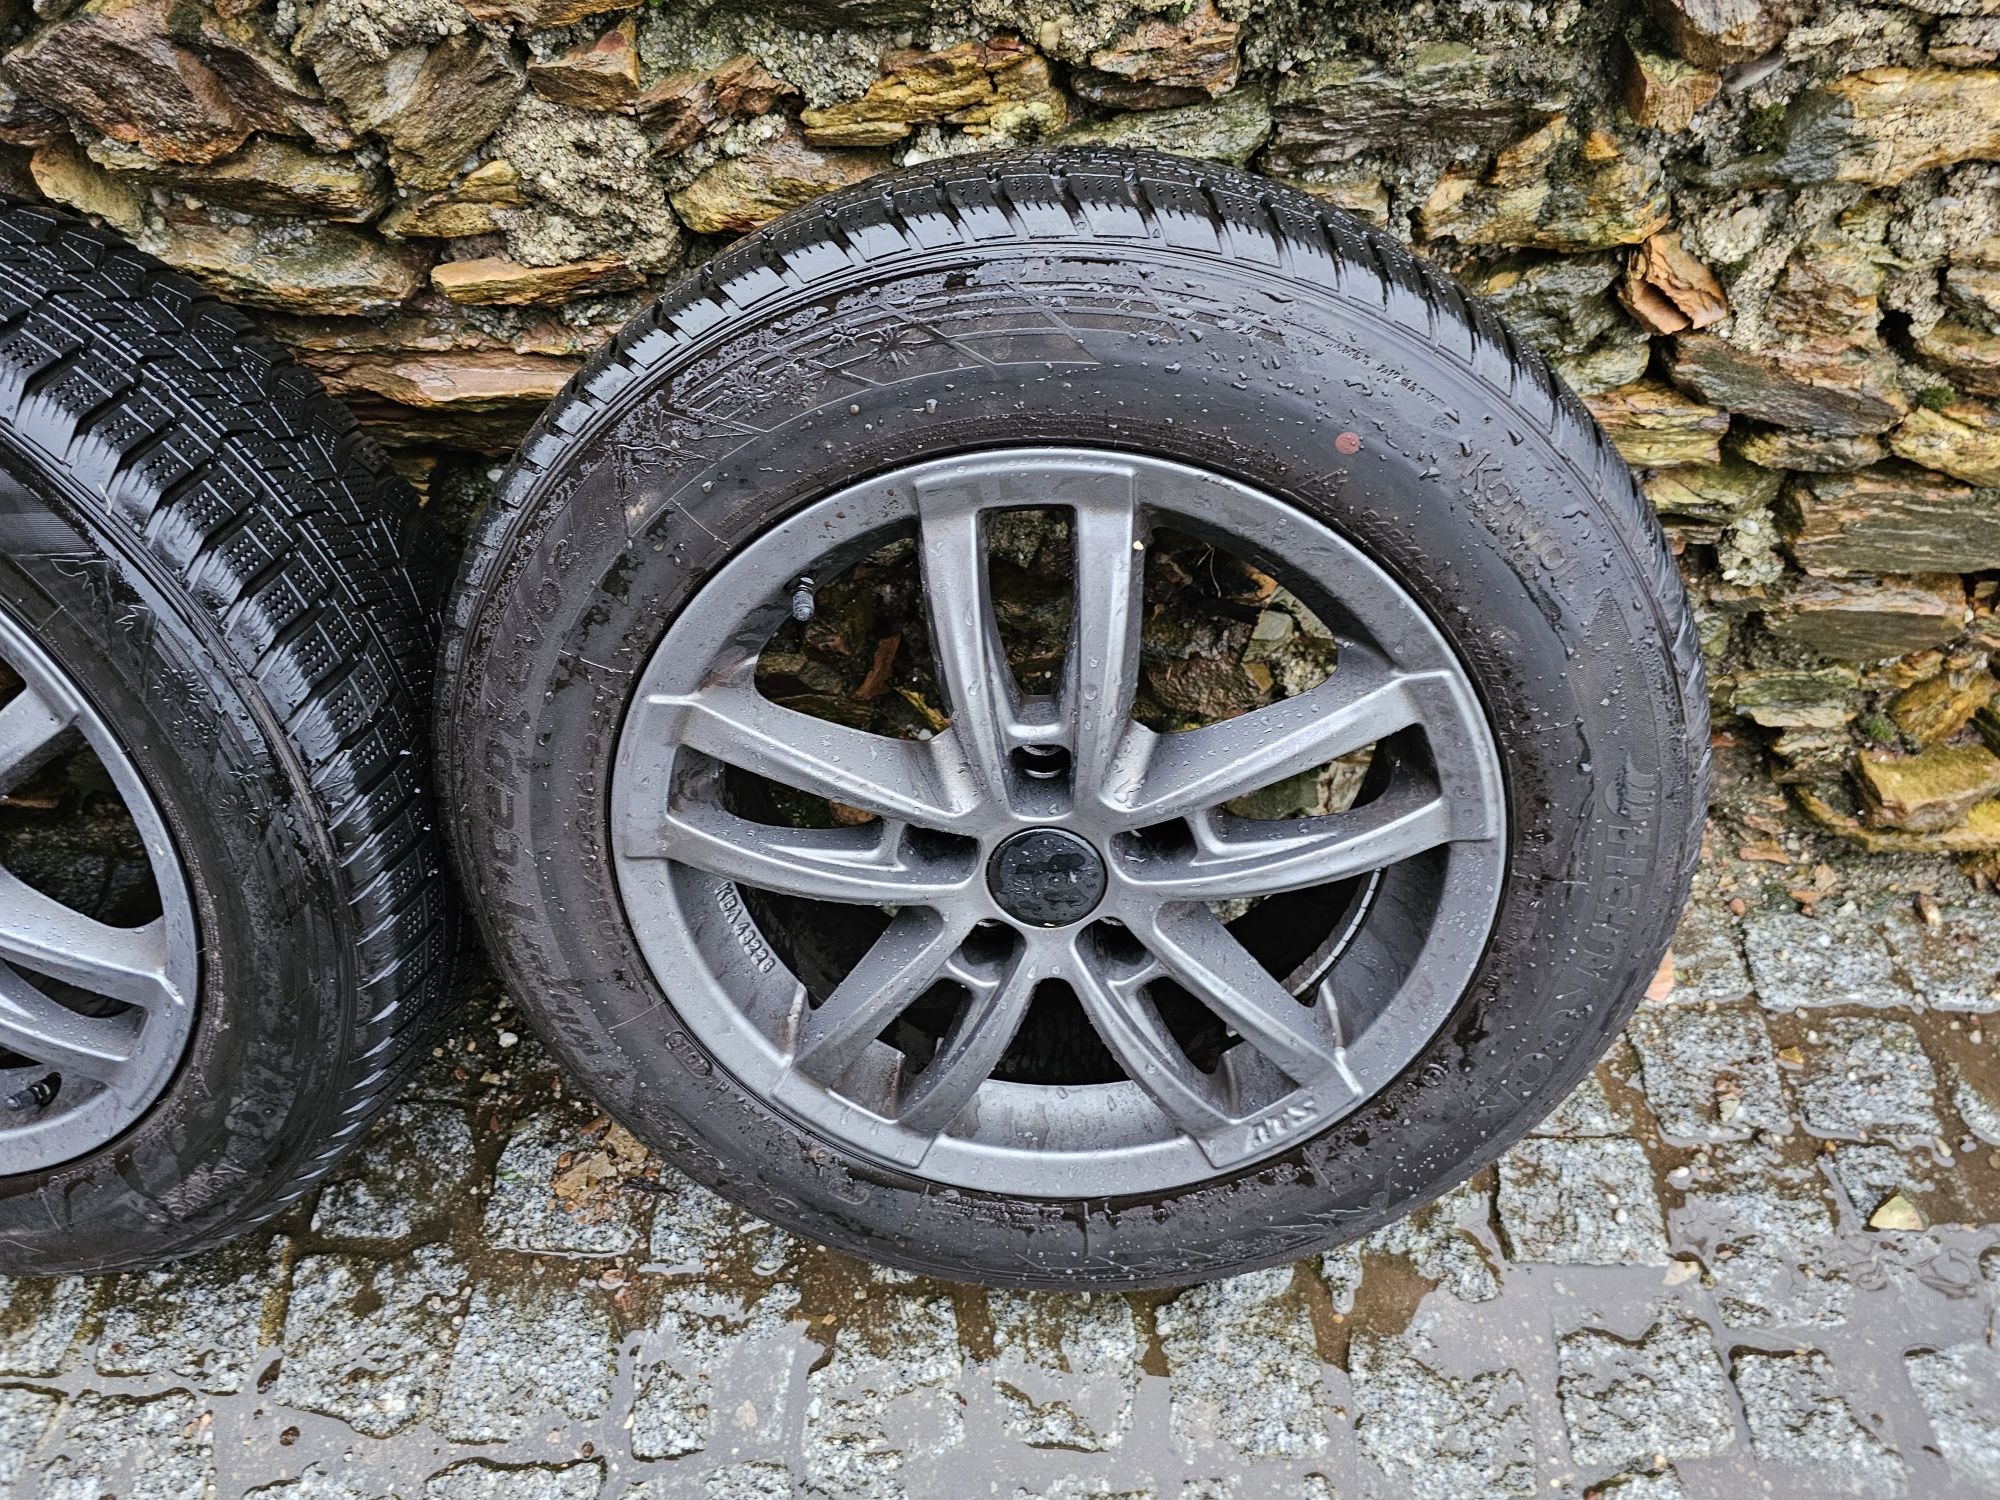 Jantes 16 5×120  BMW/MINI com pneus 205/60R16.
Possível envio para